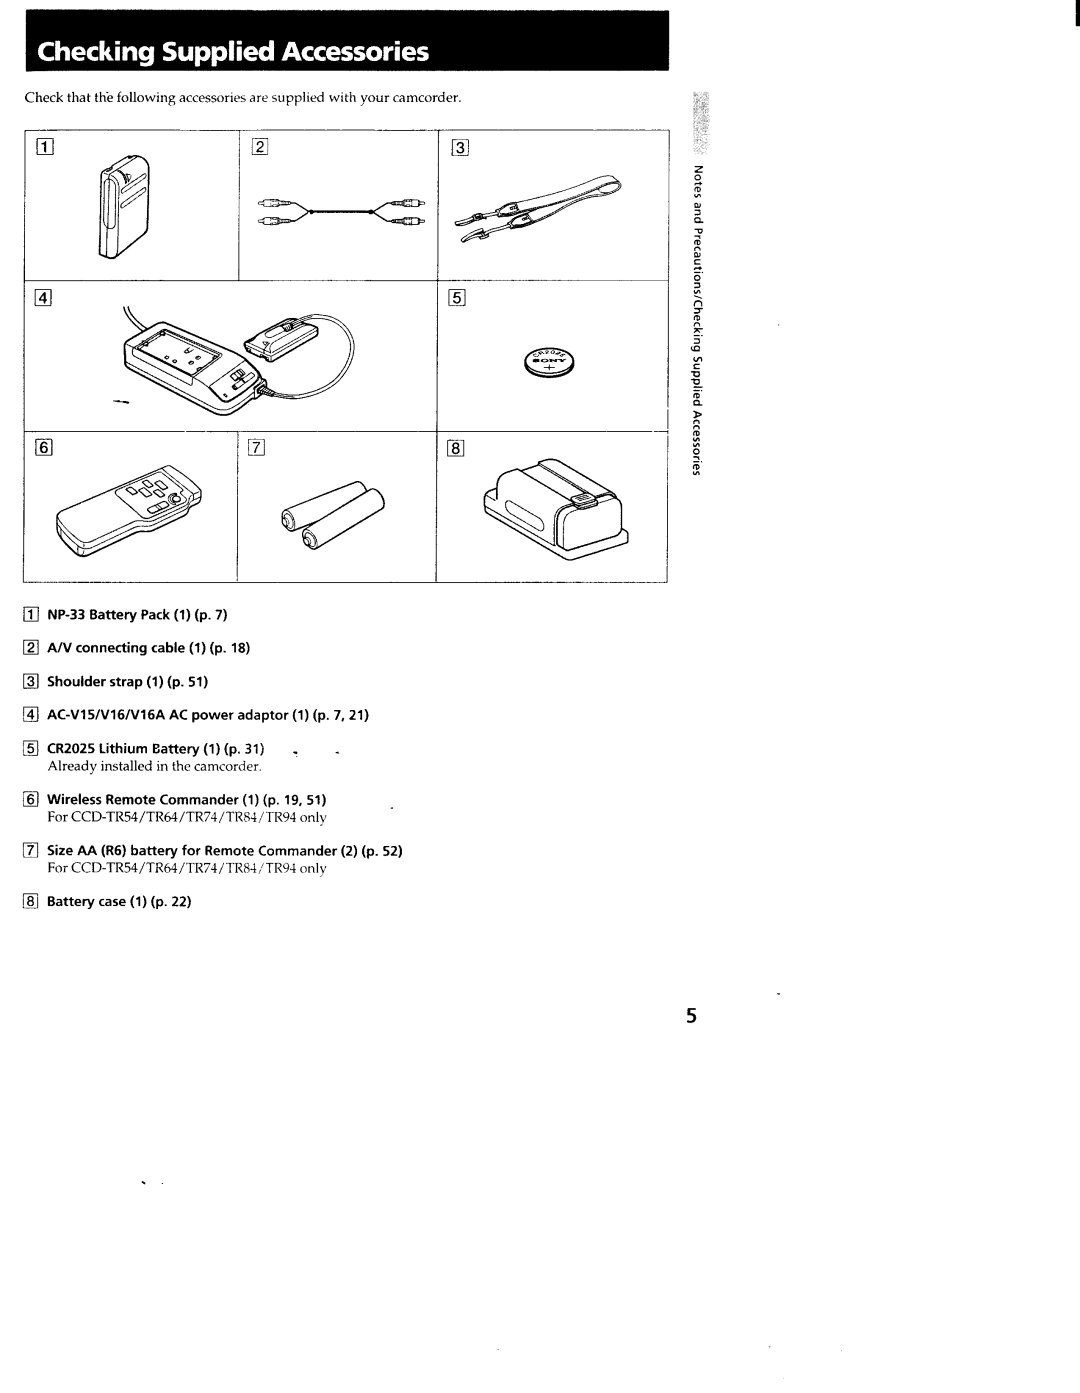 Sony CCD-TR54, CCD-TR94, CCD-TR84, CCD-TR44, CCD-TR64, CCD-TR74 manual 